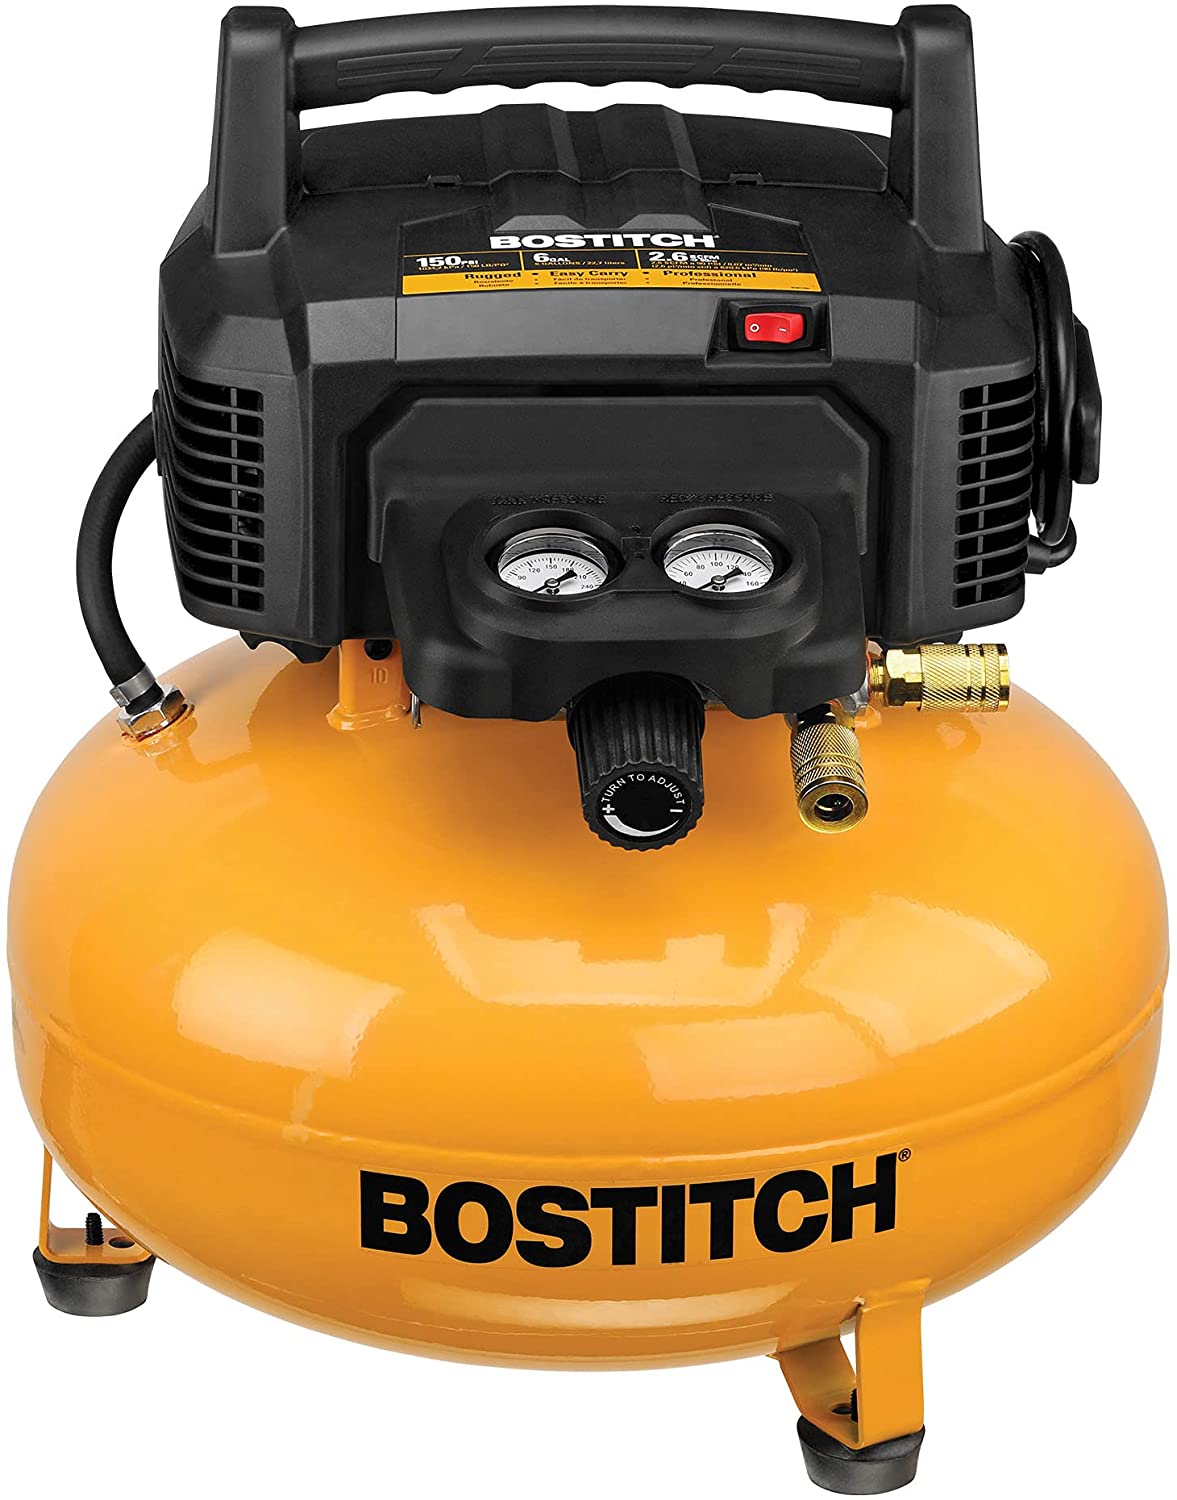 BOSTITCH BTFP02012 Air Compressor Review